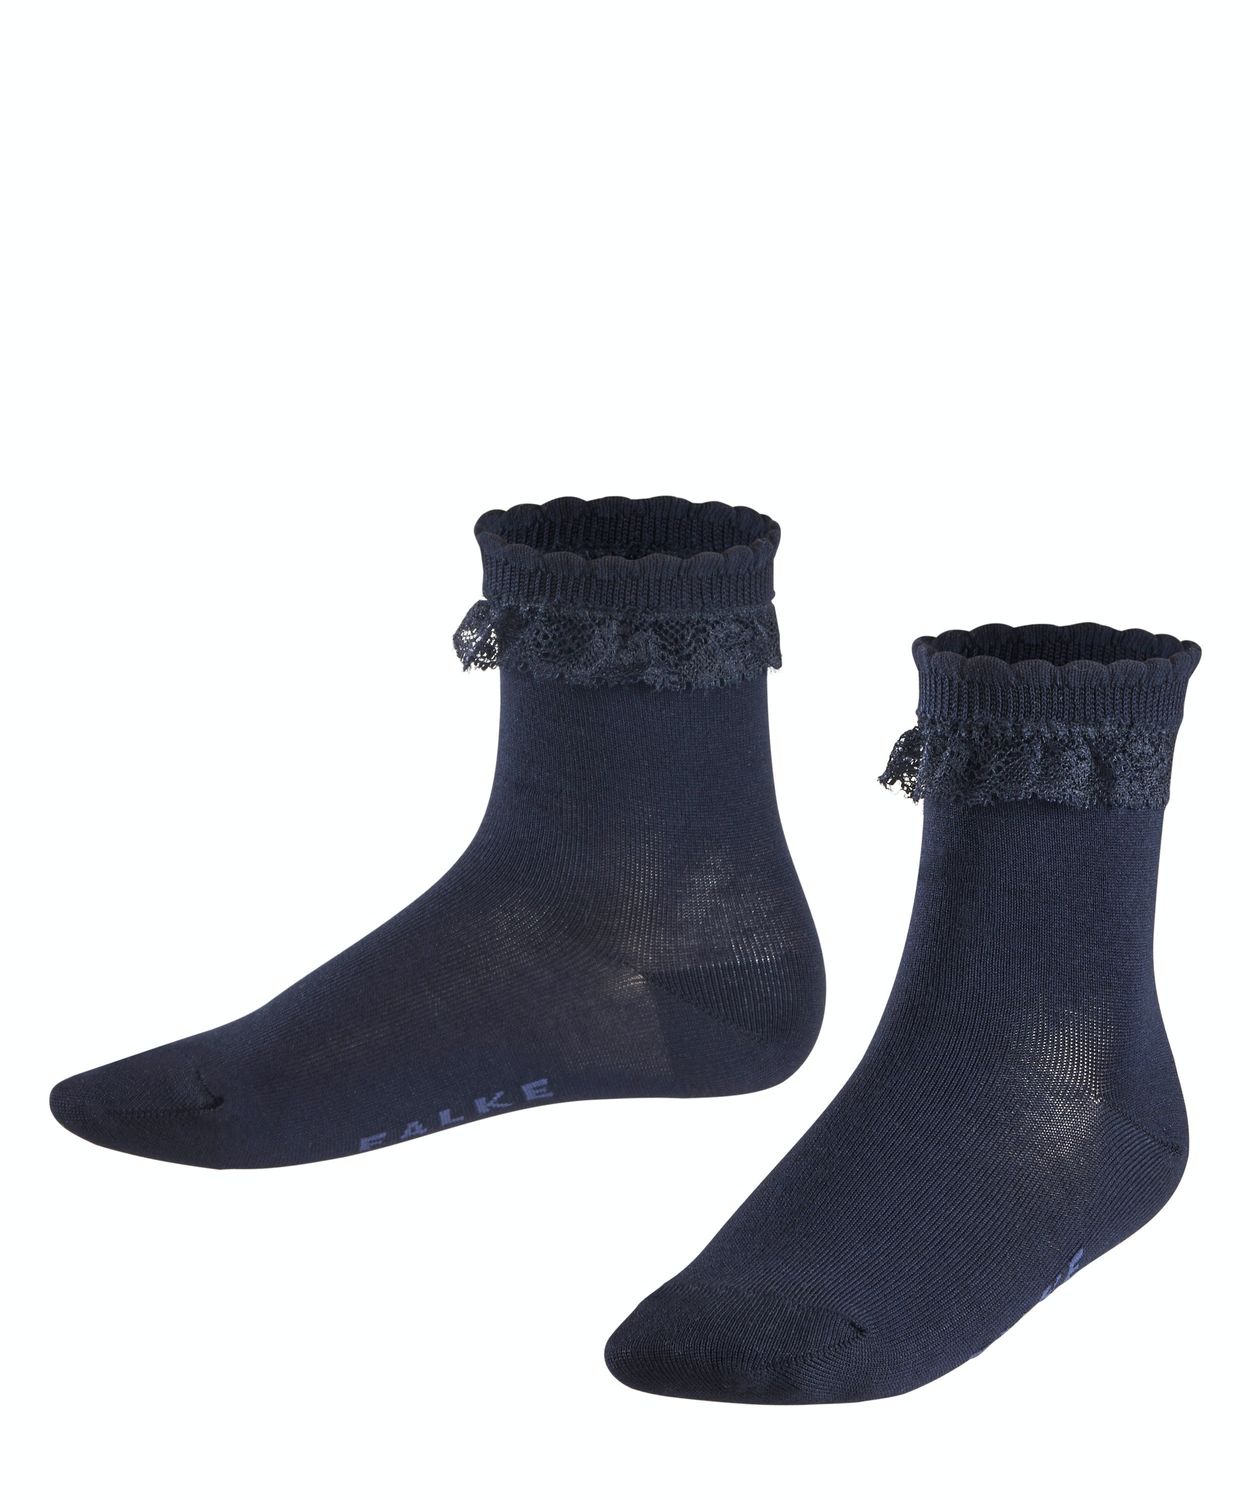 Falke Kinder Socken Romantic Lace Hersteller: Falke Bestellnummer:4043874347402